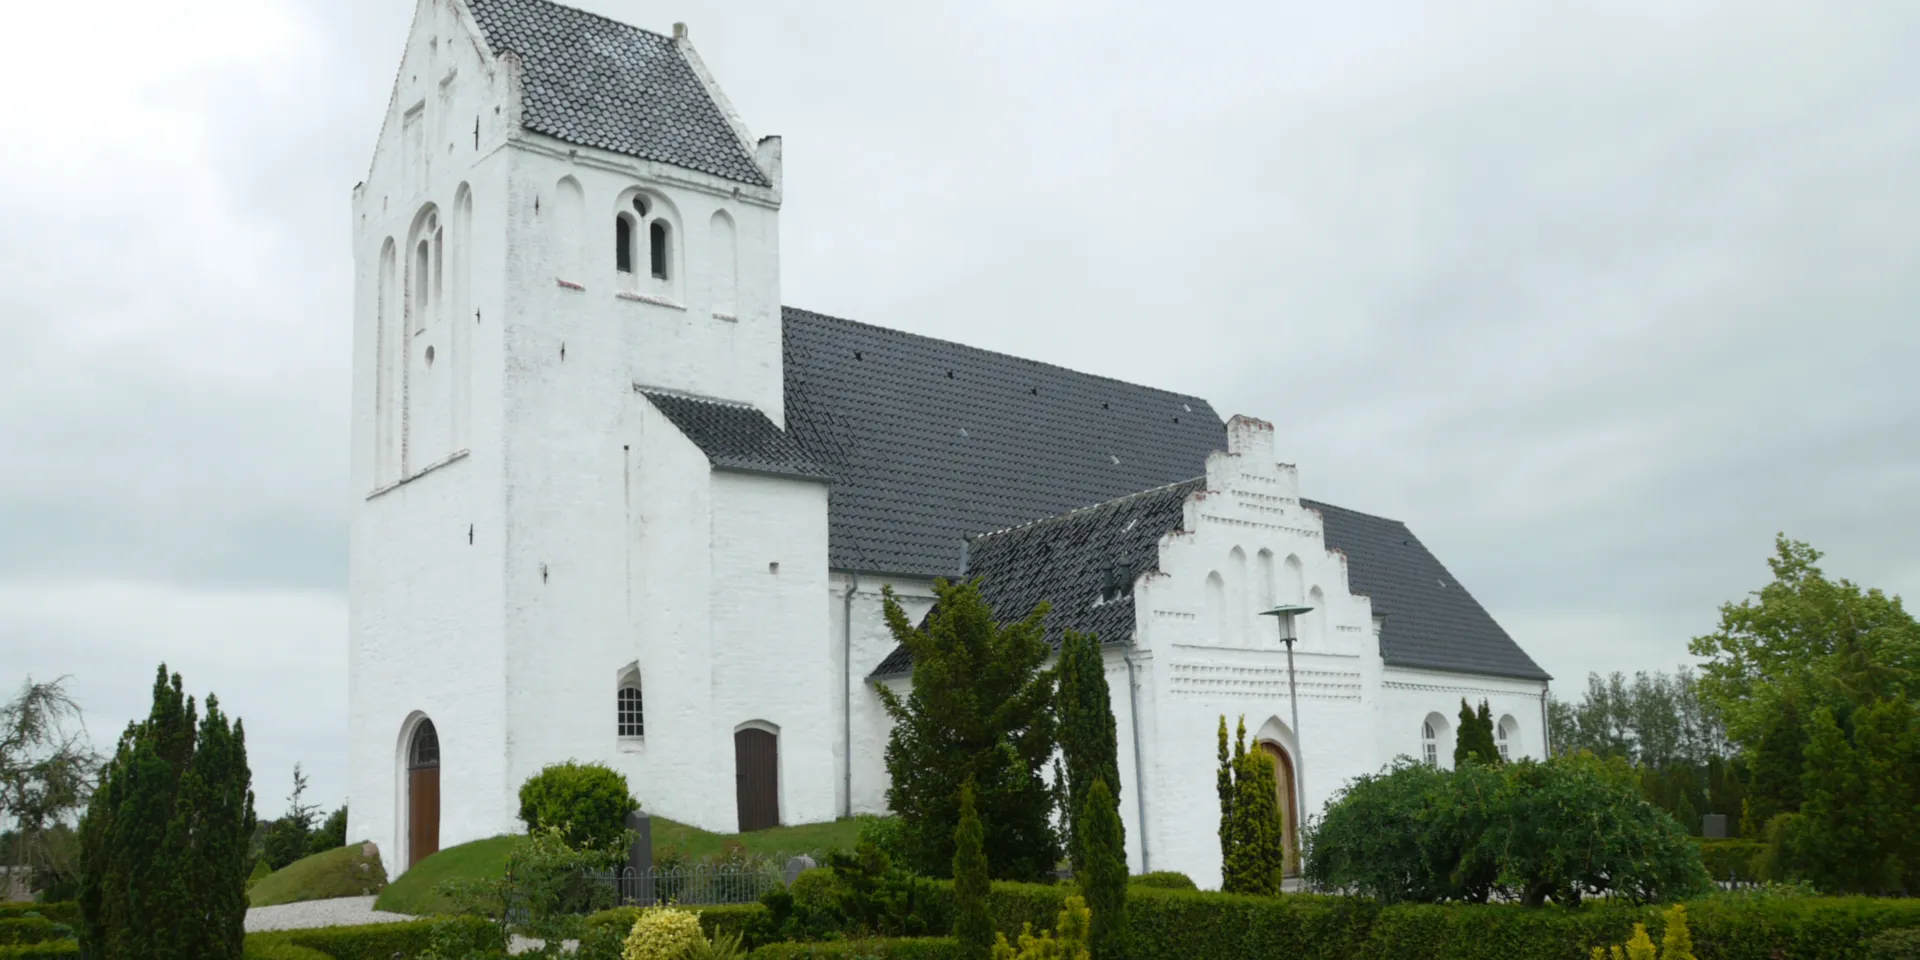 Attraktioner
Kirke
Landsbykirke
Kauslunde
Middelfart
Lillebælt Waters
Visitmiddelfart